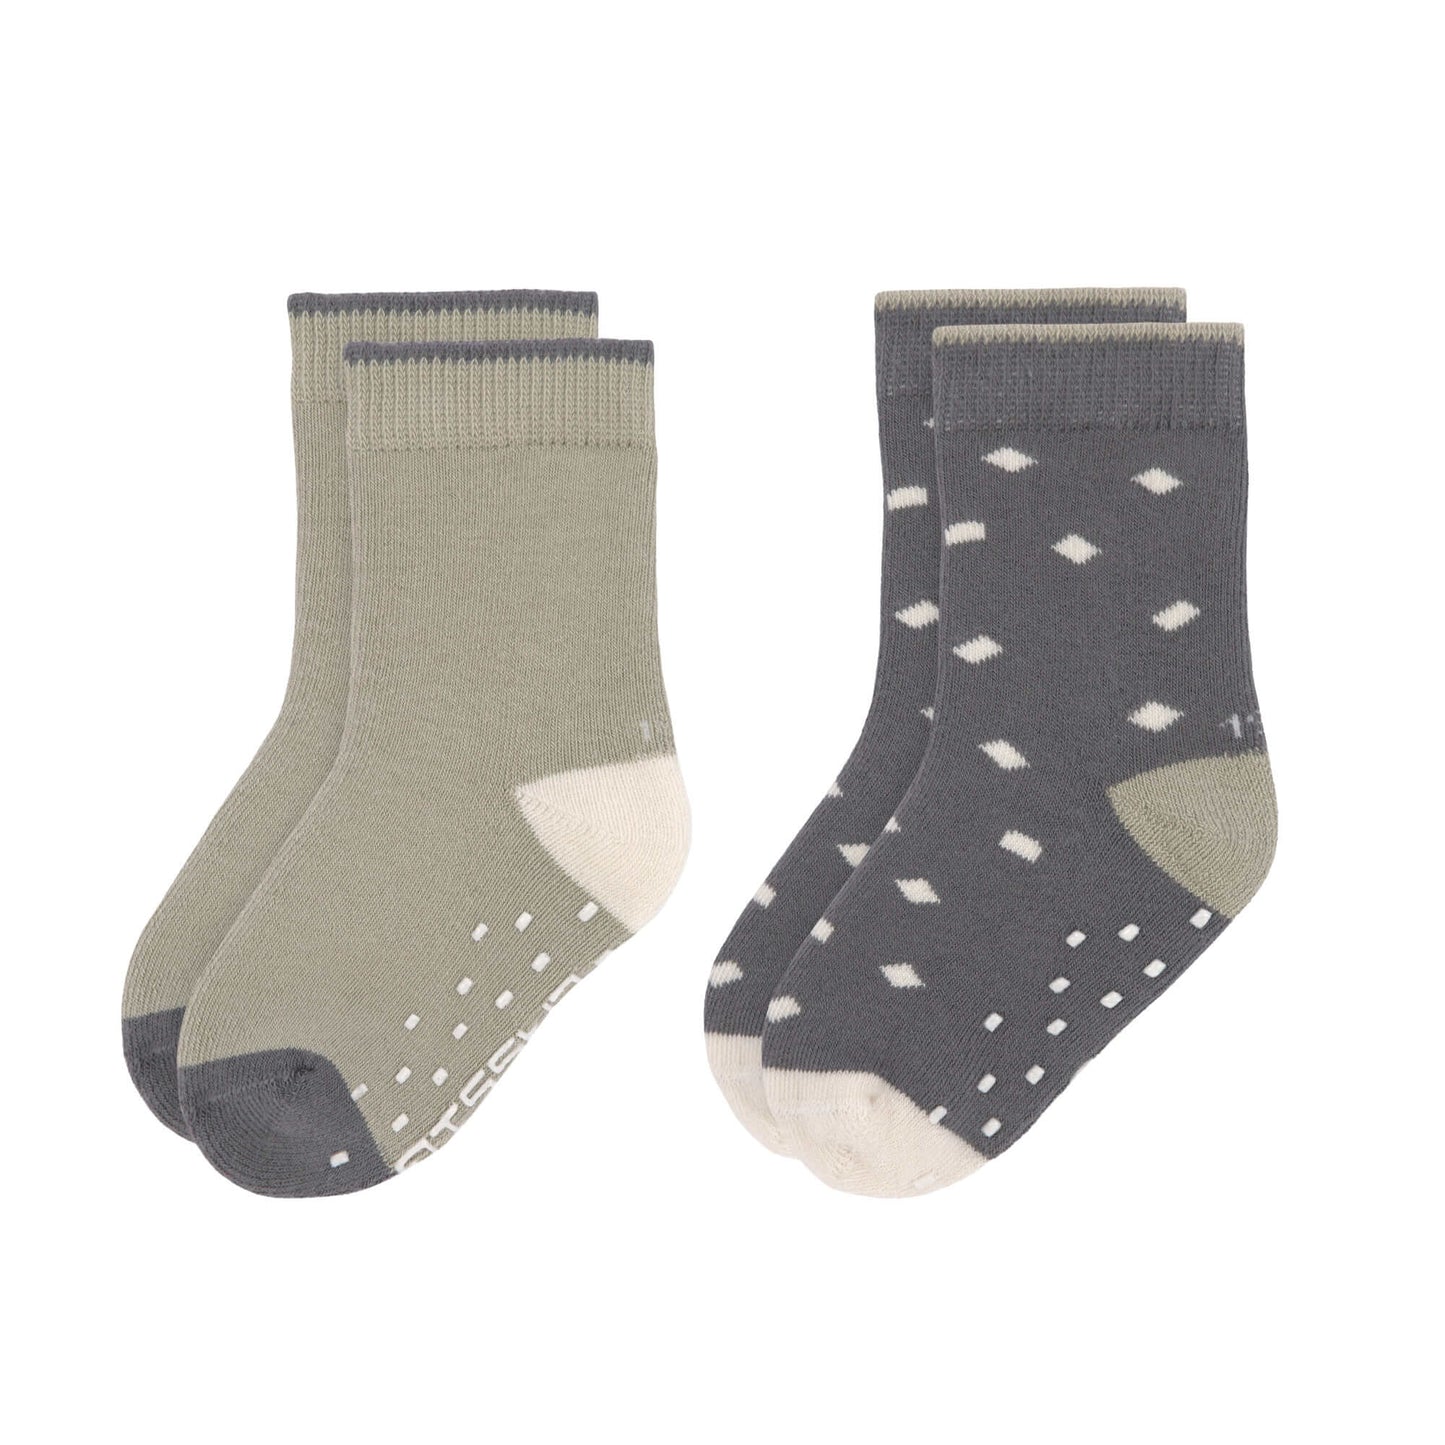 Kinder Antirutsch-Socken (2er-Pack) - GOTS Socks, Anthracite Olive, Größe 19-21